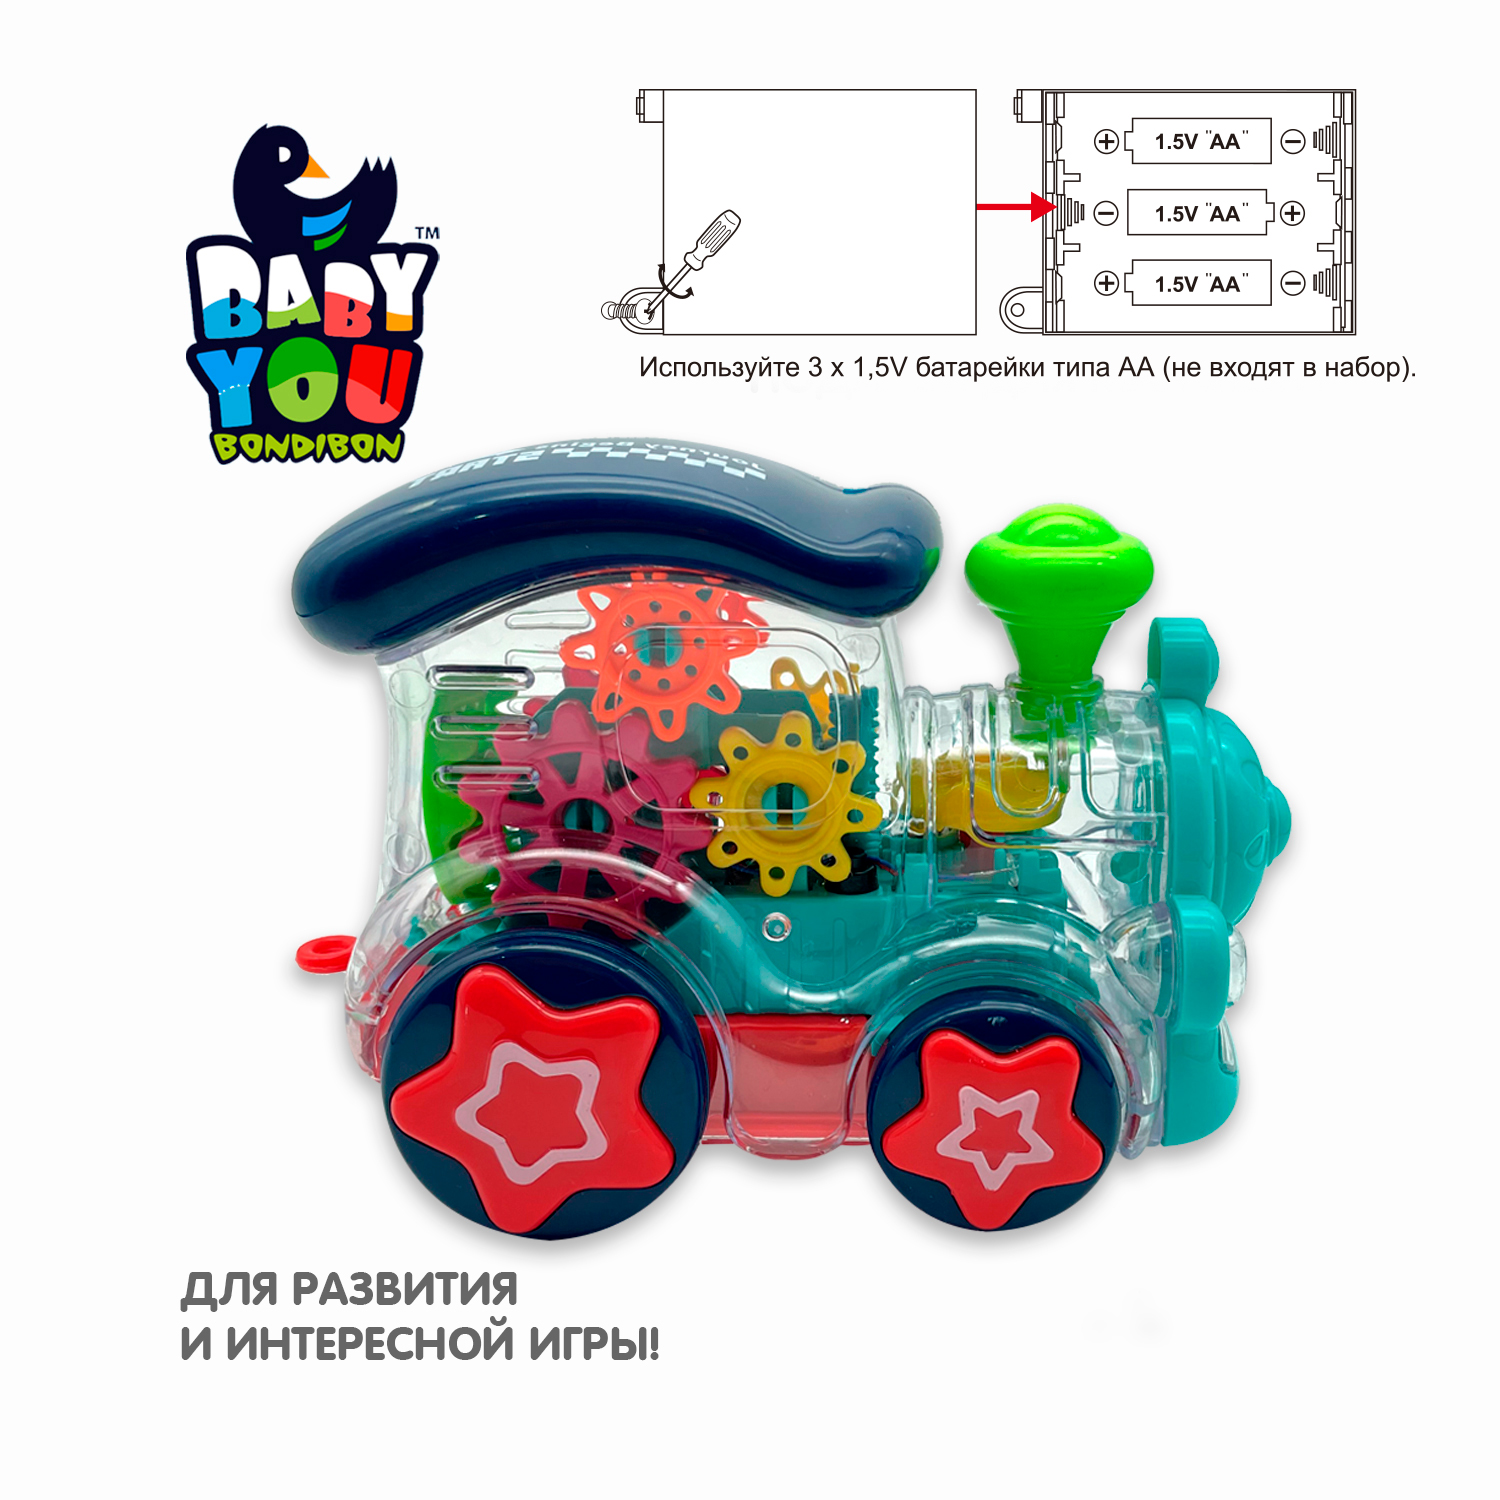 Музыкальная игрушка BONDIBON Паровозик с шестеренками со световыми эффектами и прозрачным корпусом серия Baby You - фото 8